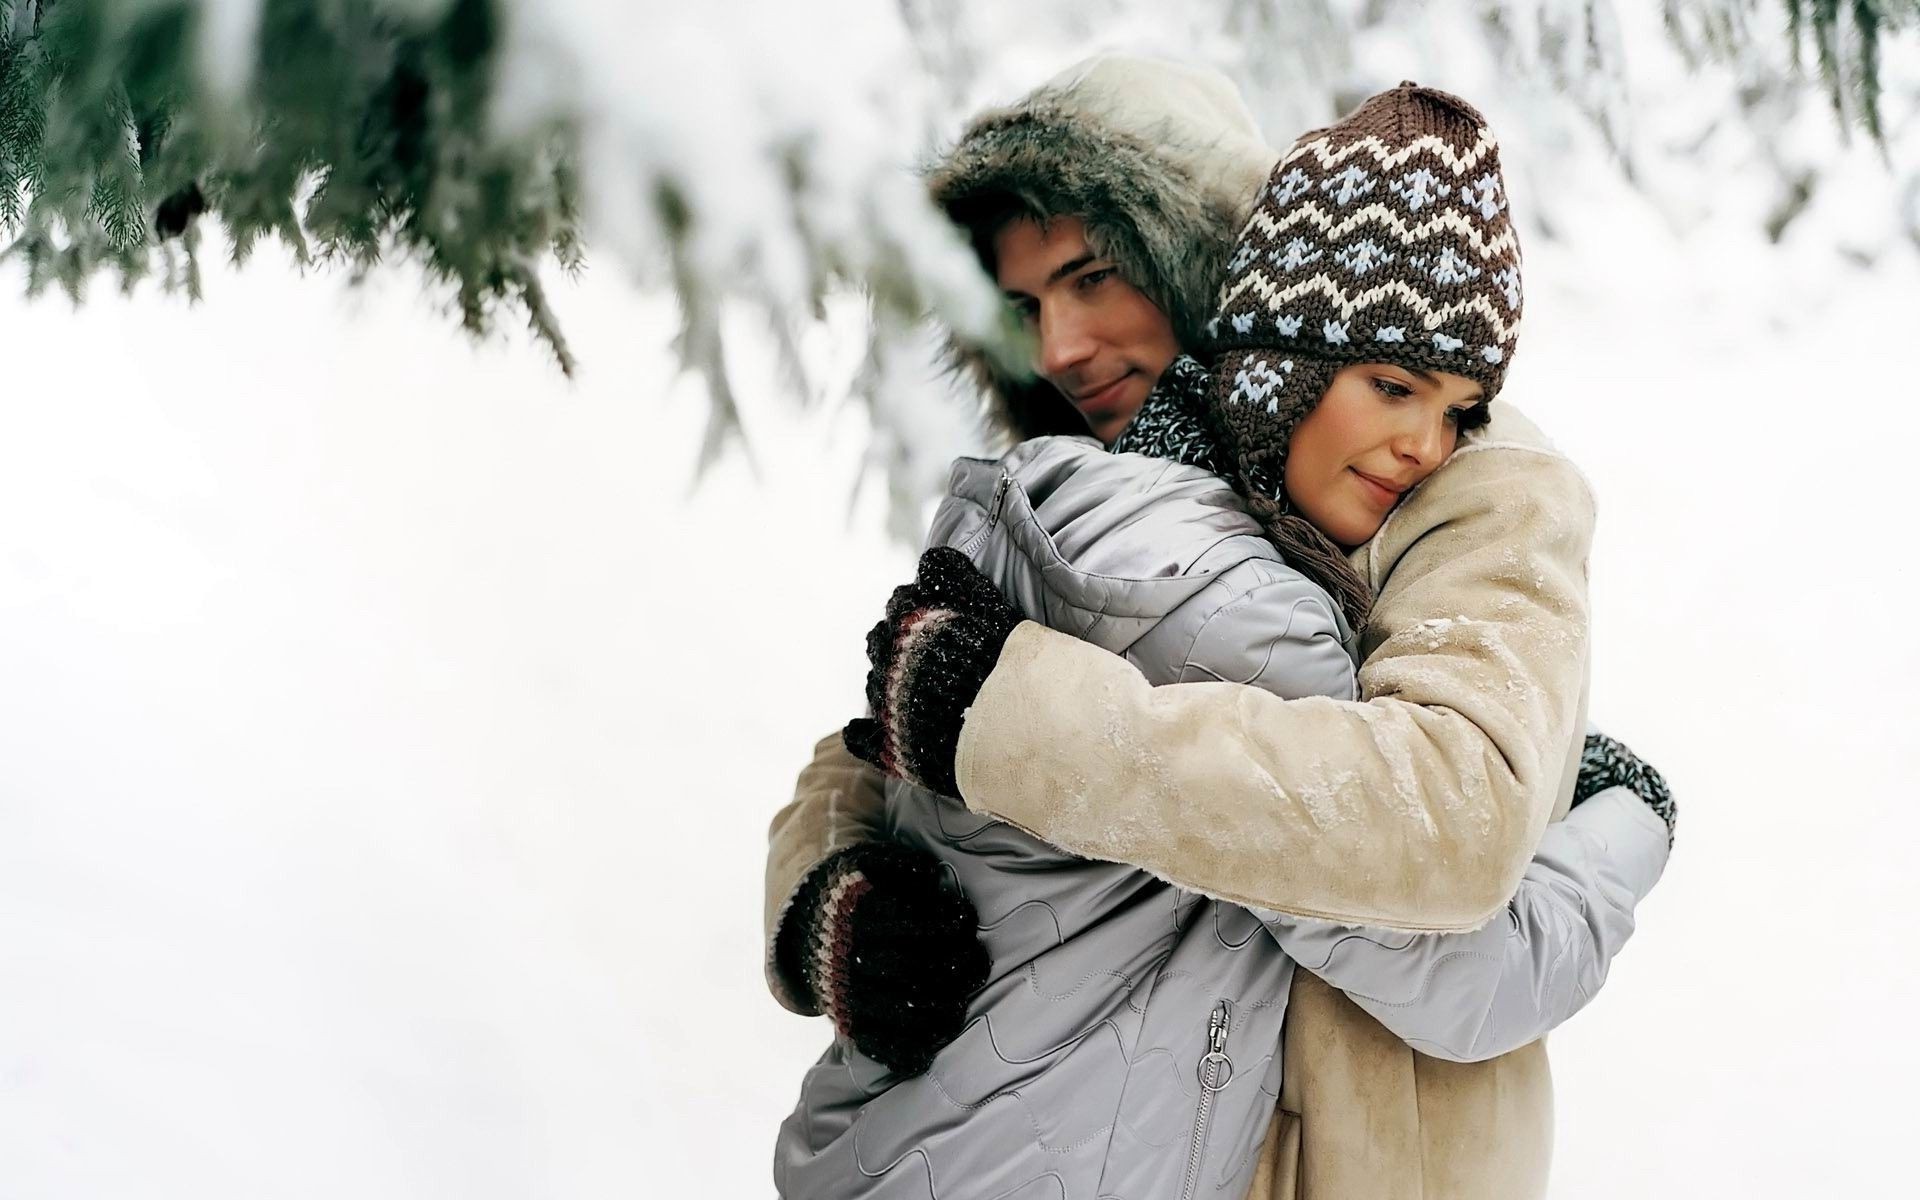 влюбленные пары зима снег холодная ребенок на открытом воздухе удовольствие перчатки шарф крышка носить мороз рождество природа отдых